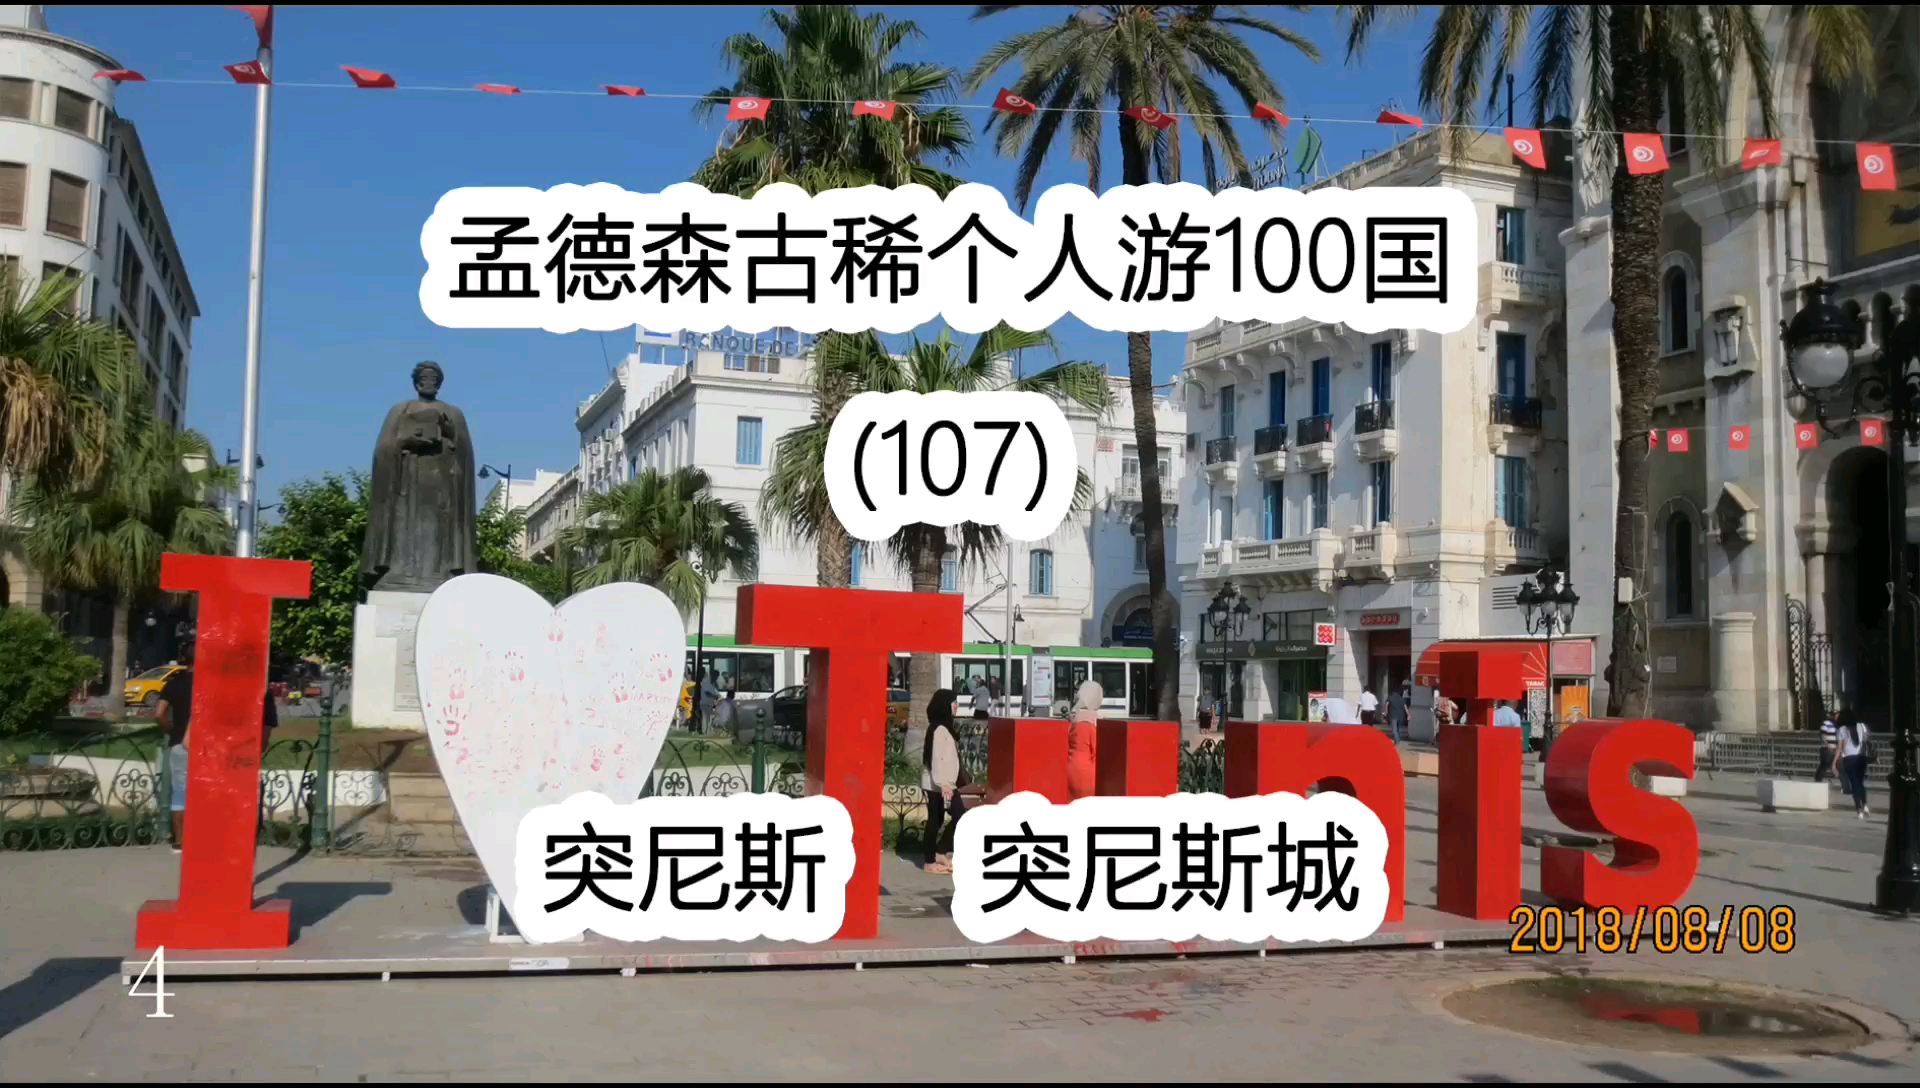 孟德森古稀个人游100国(107)突尼斯 突尼斯城